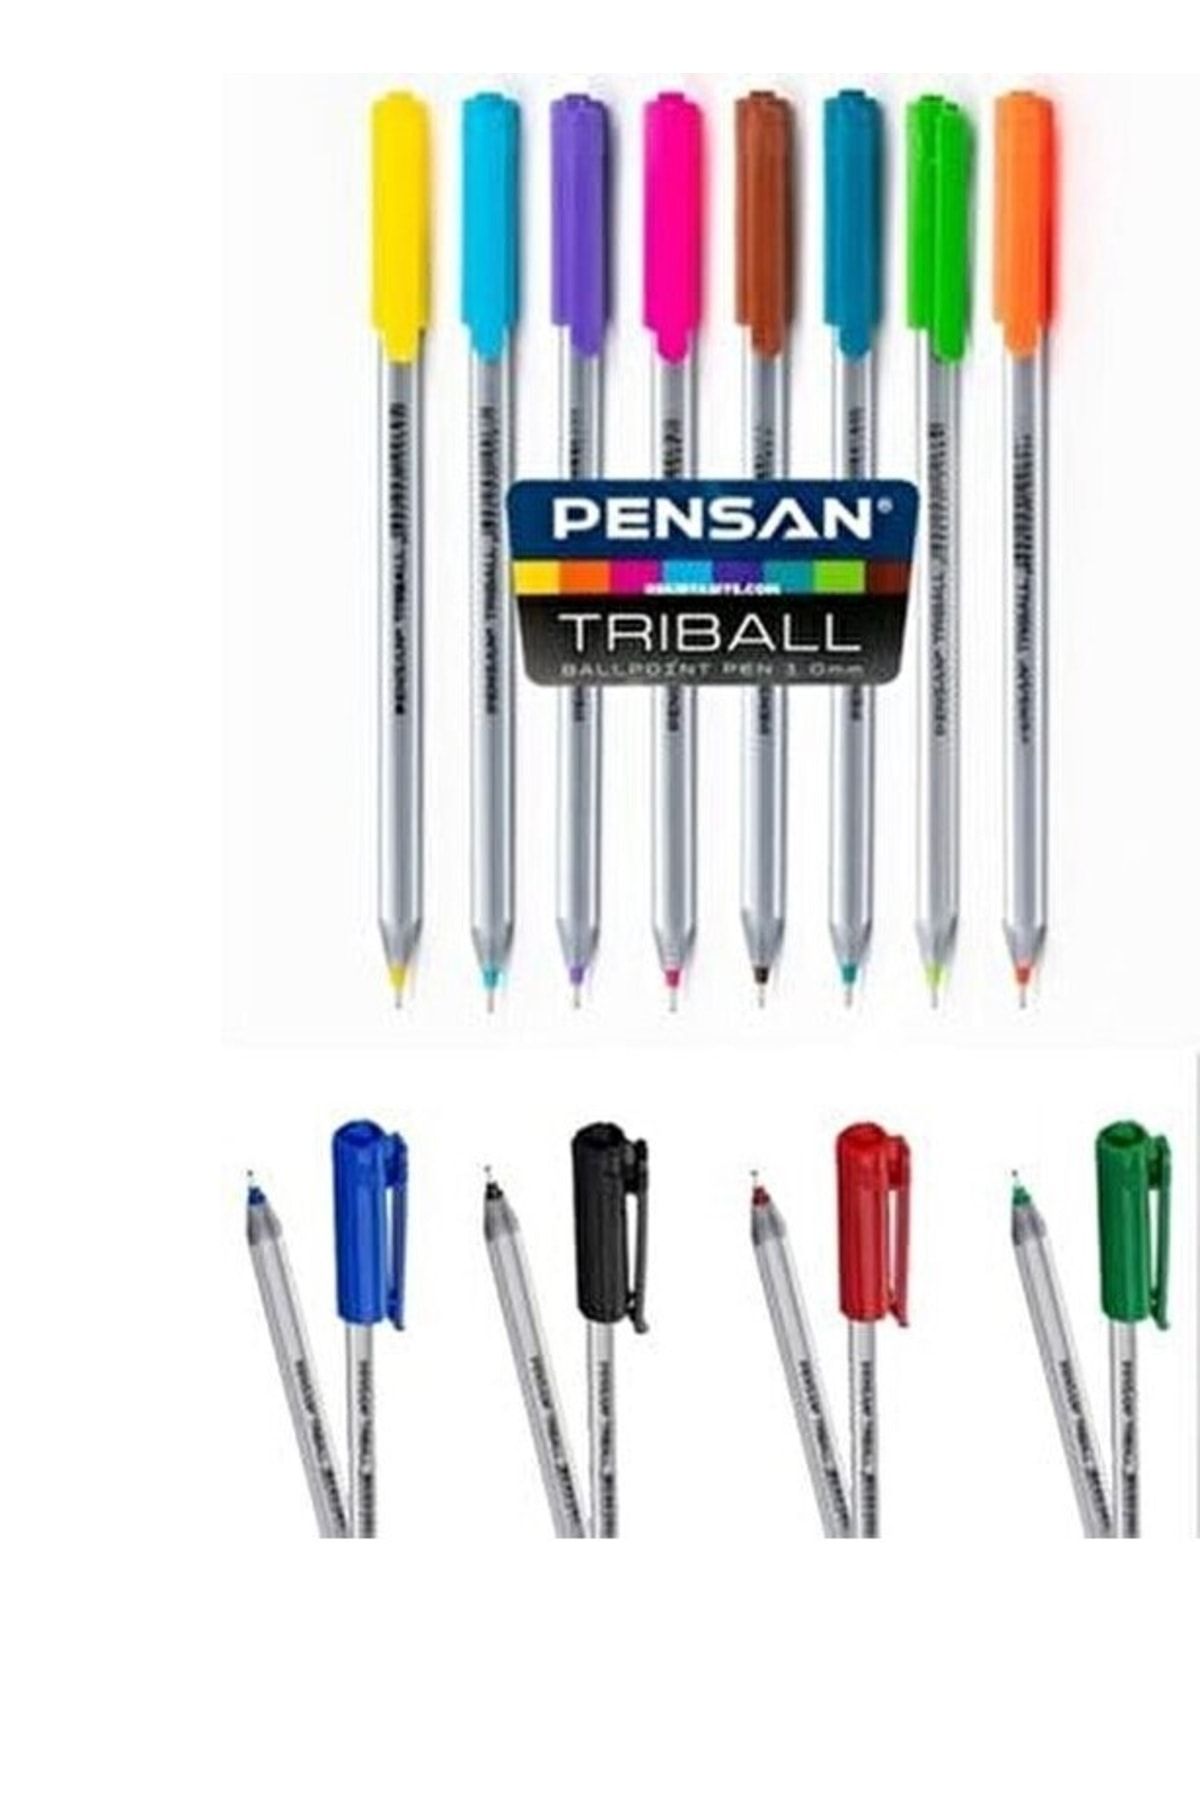 Pensan Triball 1.0 Mm Tükenmez Kalem 12 Farklı Renk